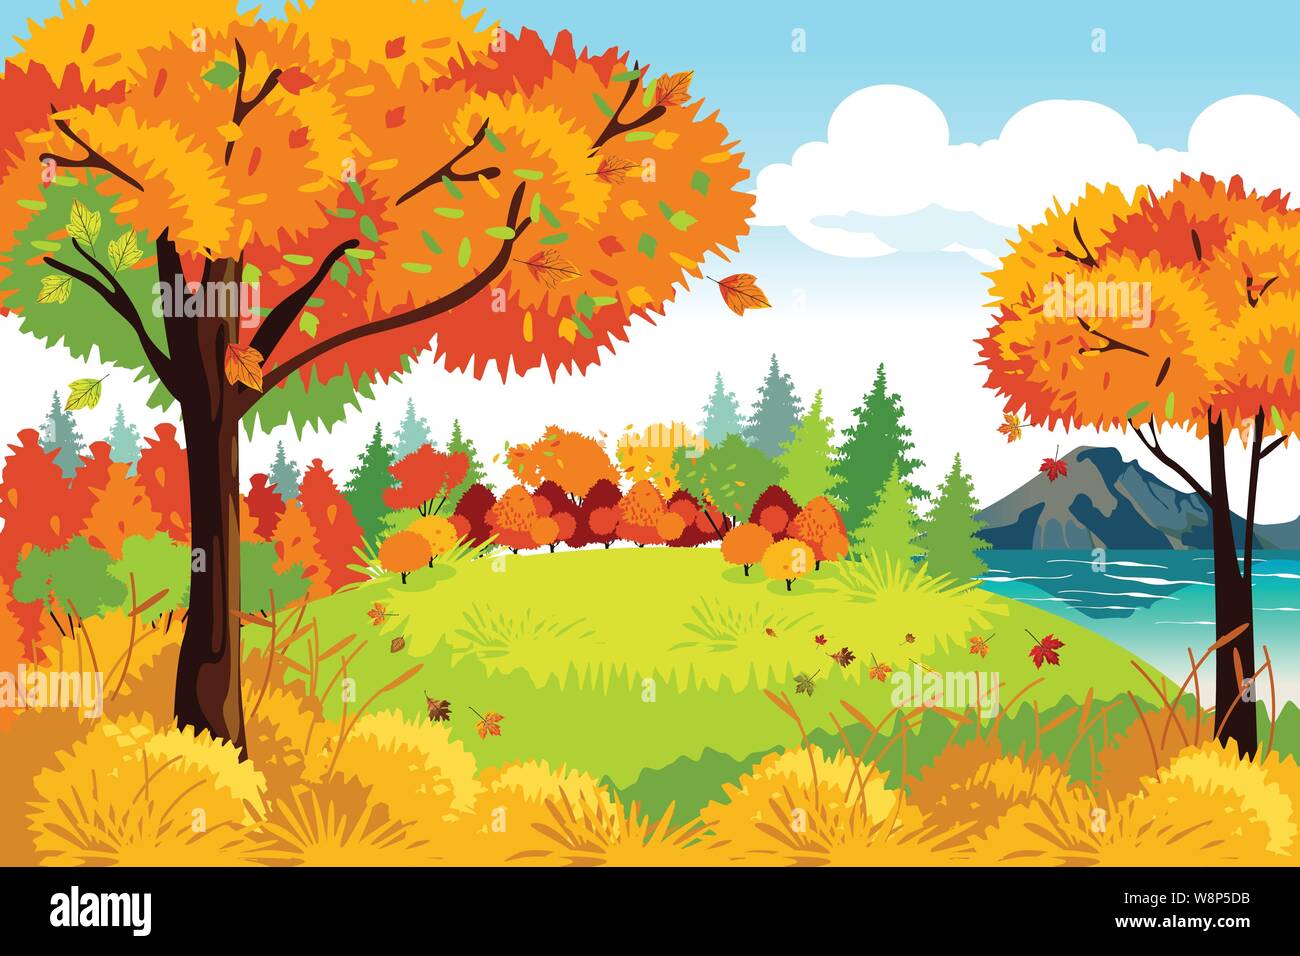 Ein Vektor Illustration der Schönen Herbst oder Herbst Jahreszeit Natur Landschaft Hintergrund Stock Vektor